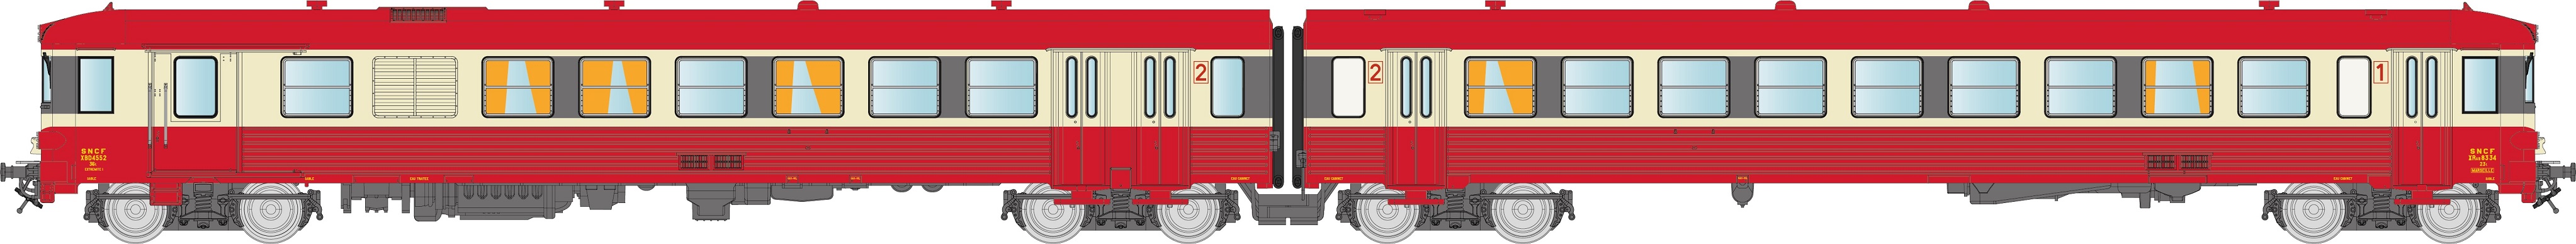 N SNCF EAD X4500 rot/cremeEp4 2-teil. Diesel-Triebzug Baureihe X 4500, 3 Spitzenlichter, mit rotem Dach, lackiertes SNCF Logo, Betr.-Nr.: XBD4552 / XRAB 8334, Depot MARSEILLE